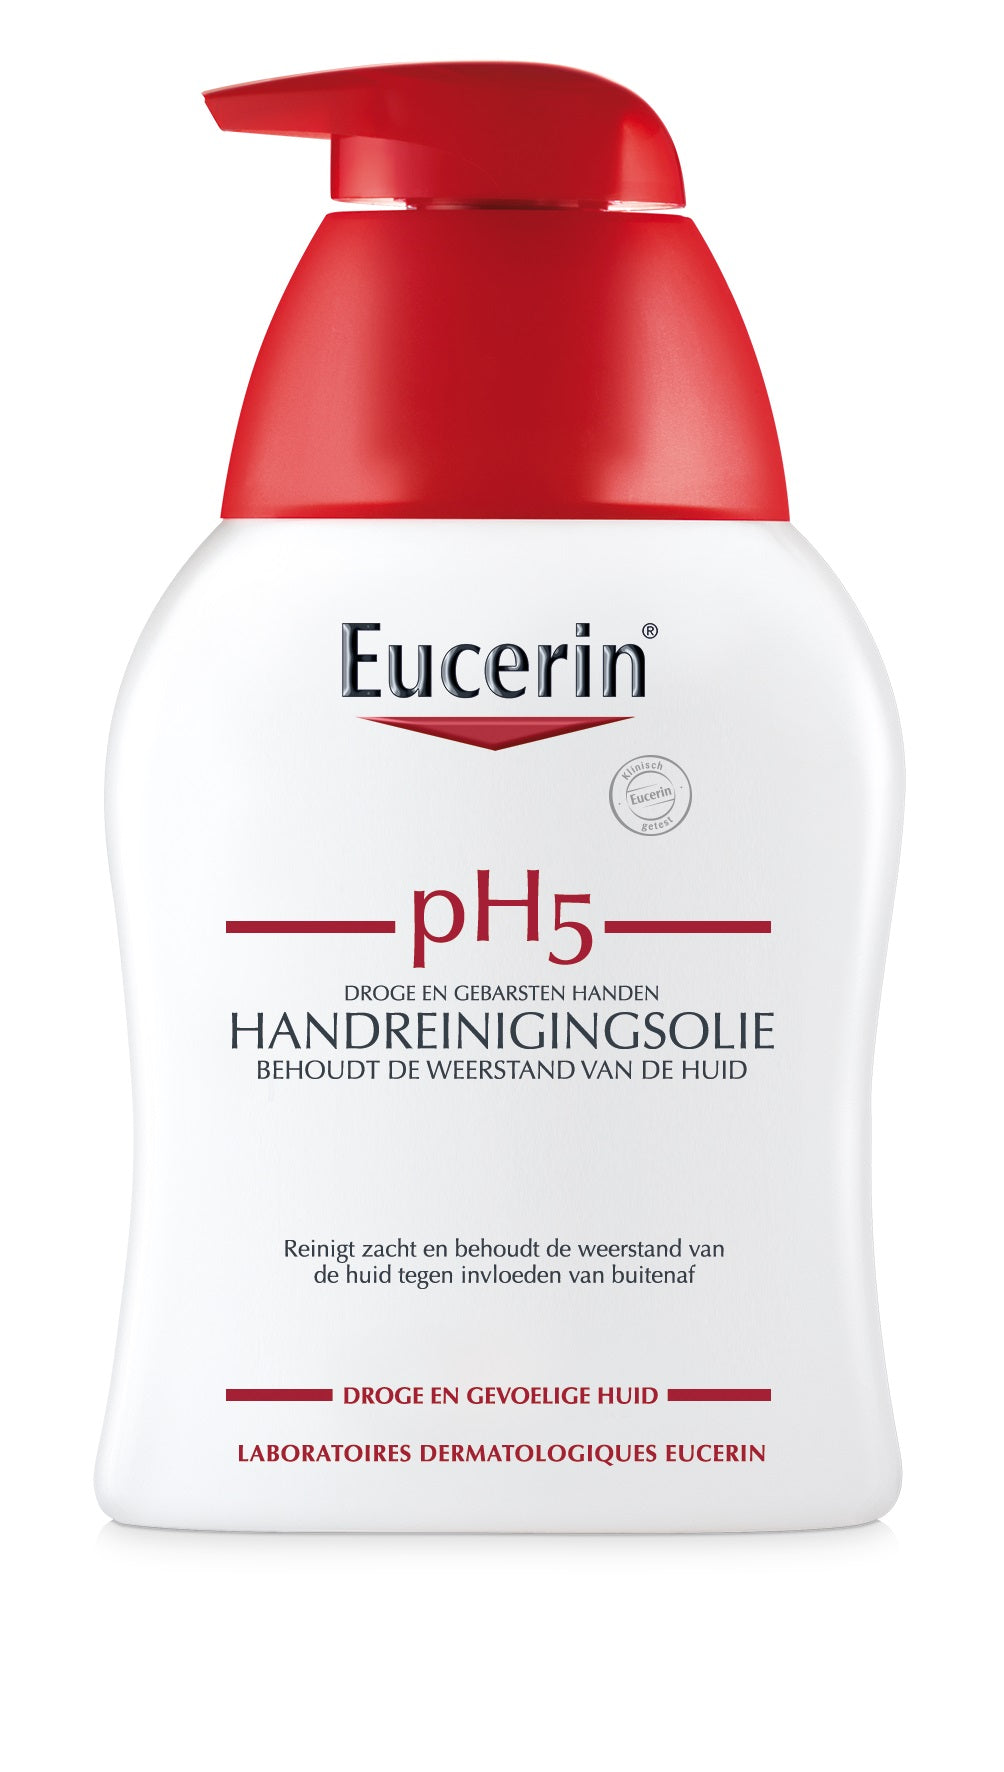 Eucerin pH5 Handreinigingsolie (250ML) - Eucerin - Huidproducten.nl